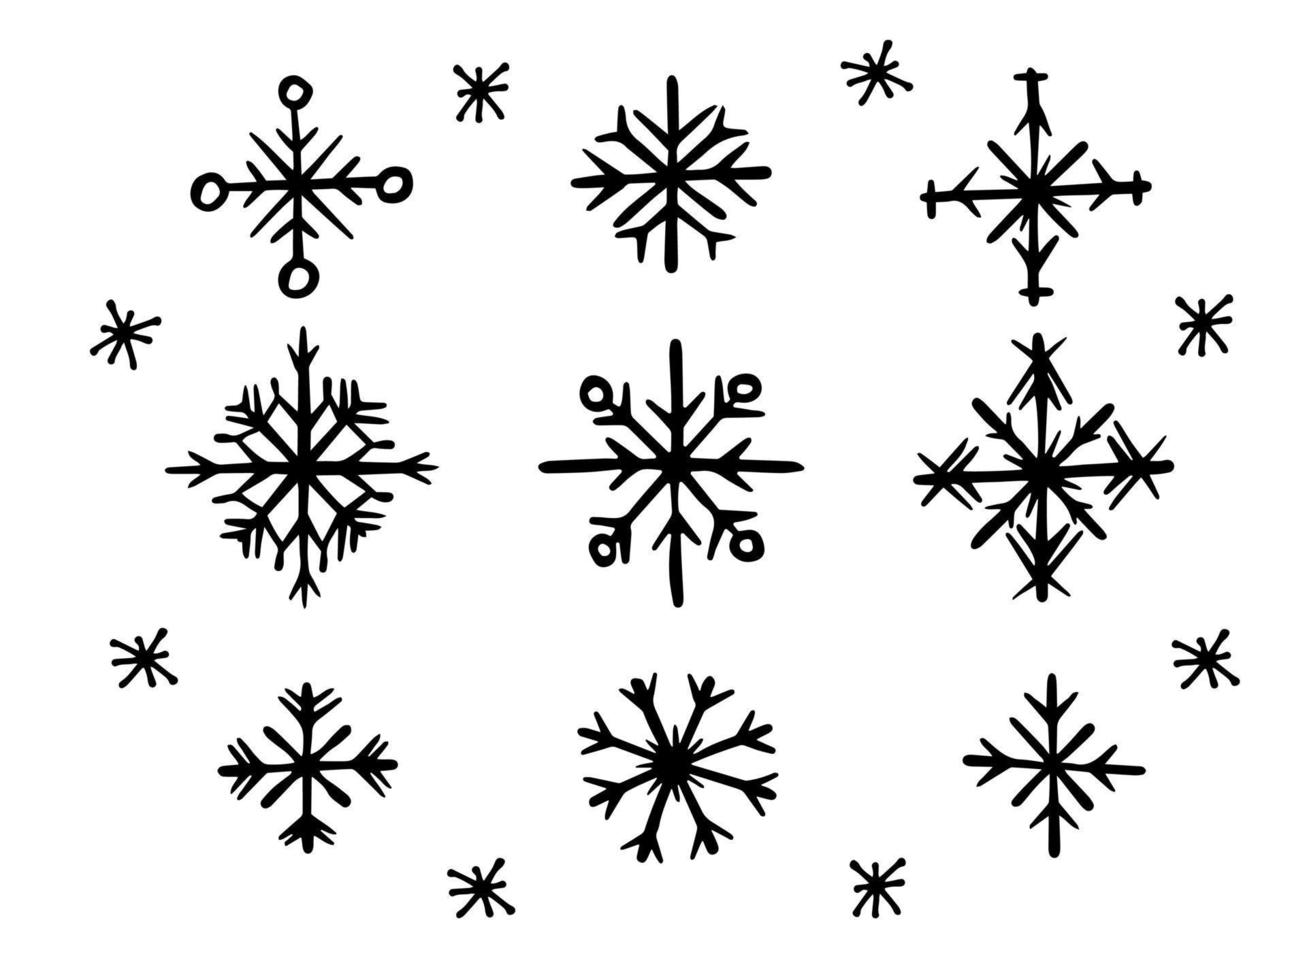 colección de copos de nieve de navidad de garabatos en blanco y negro. conjunto simple dibujado a mano de elementos de diseño vector